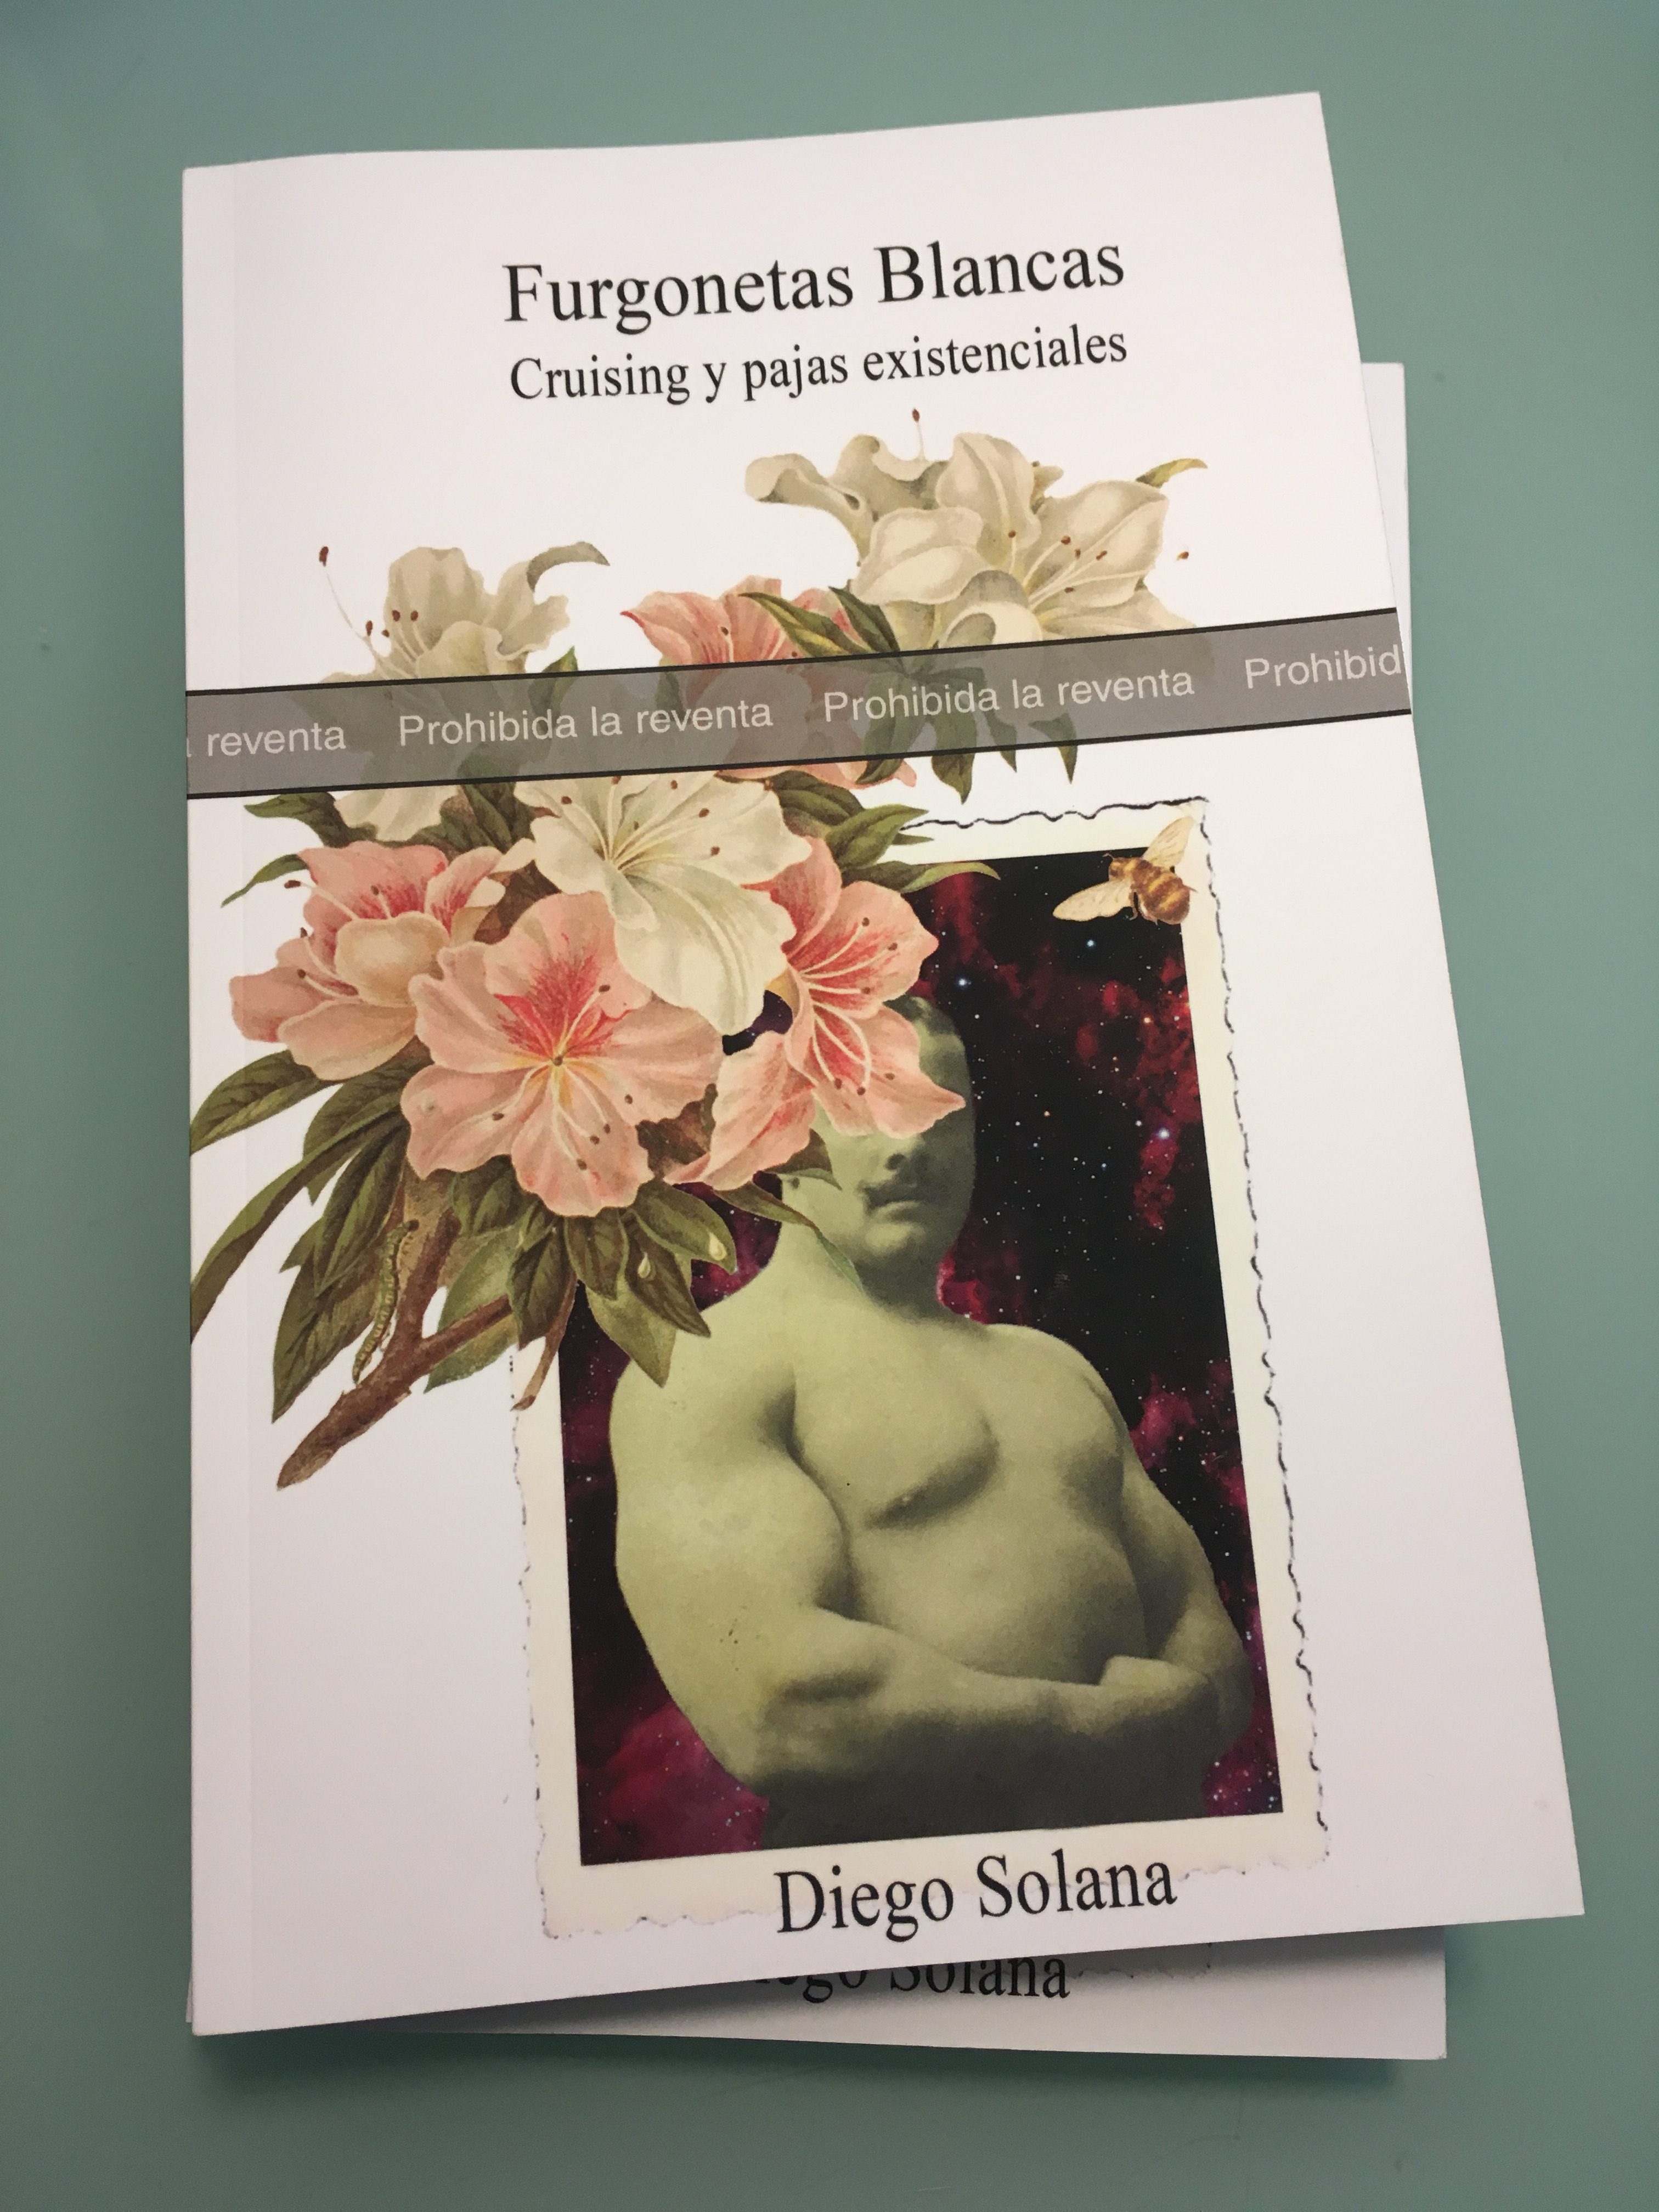 "Furgonetas Blancas. Cruising y pajas existenciales" por Diego Solana 2019